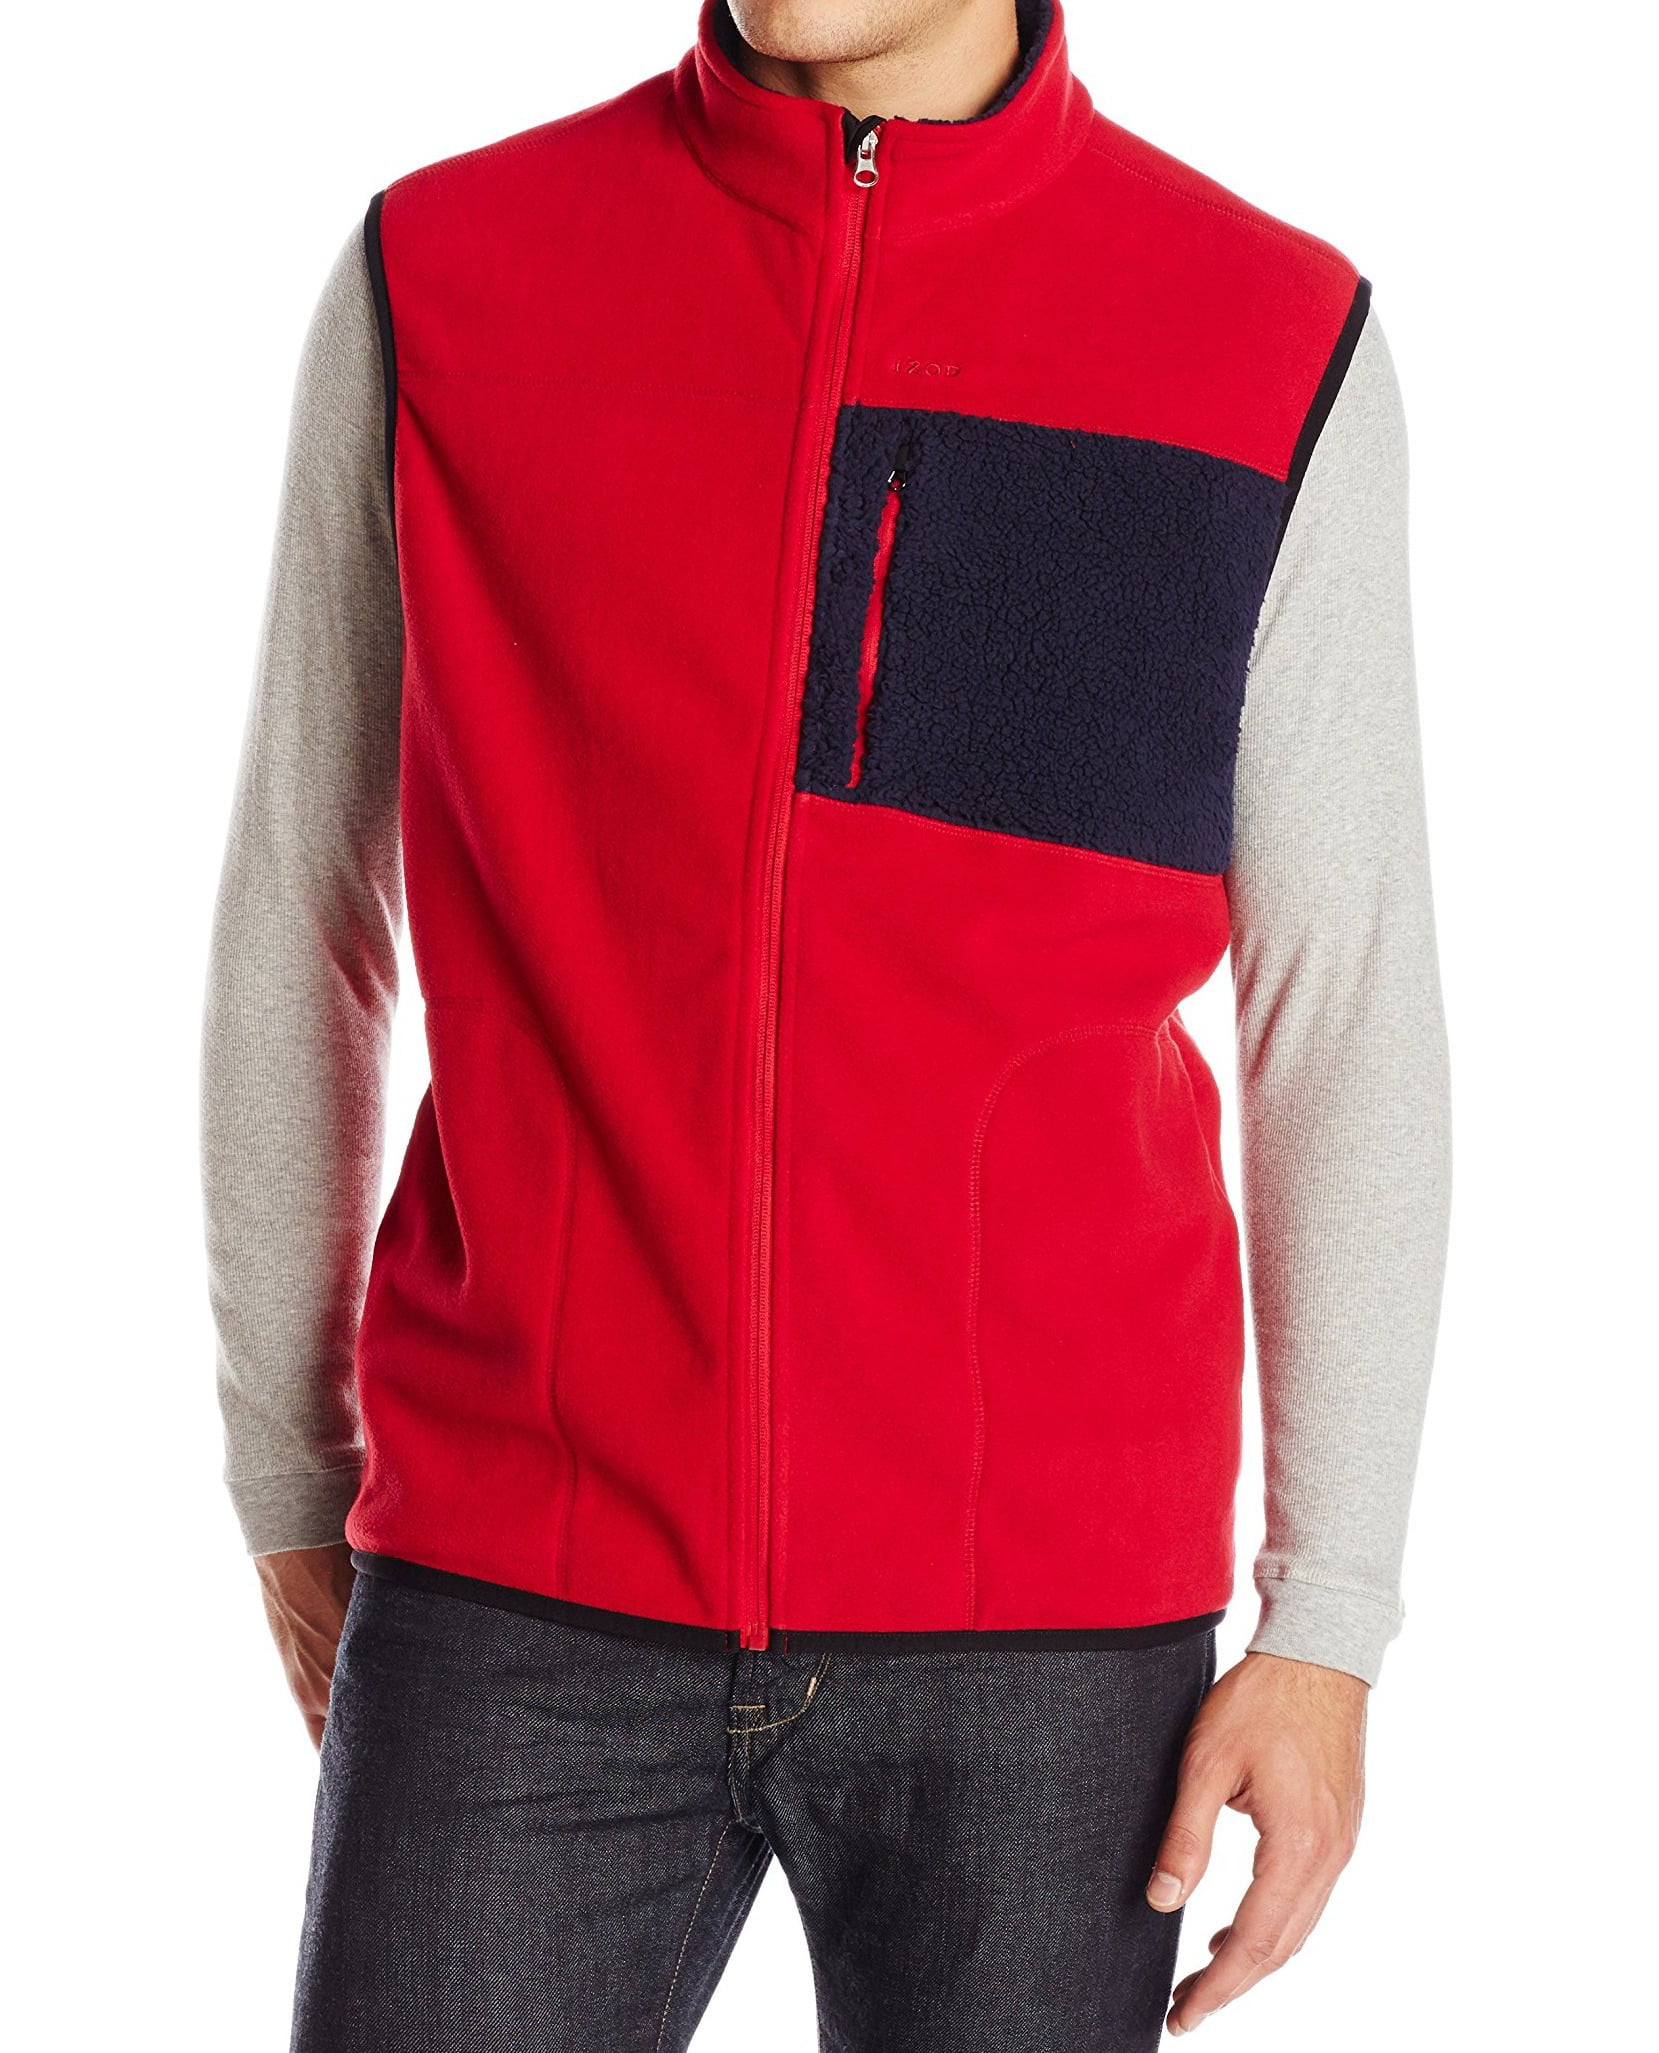 IZOD - IZOD NEW Jester Red Mens Size Large L Full-Zip Colorblock Vest ...